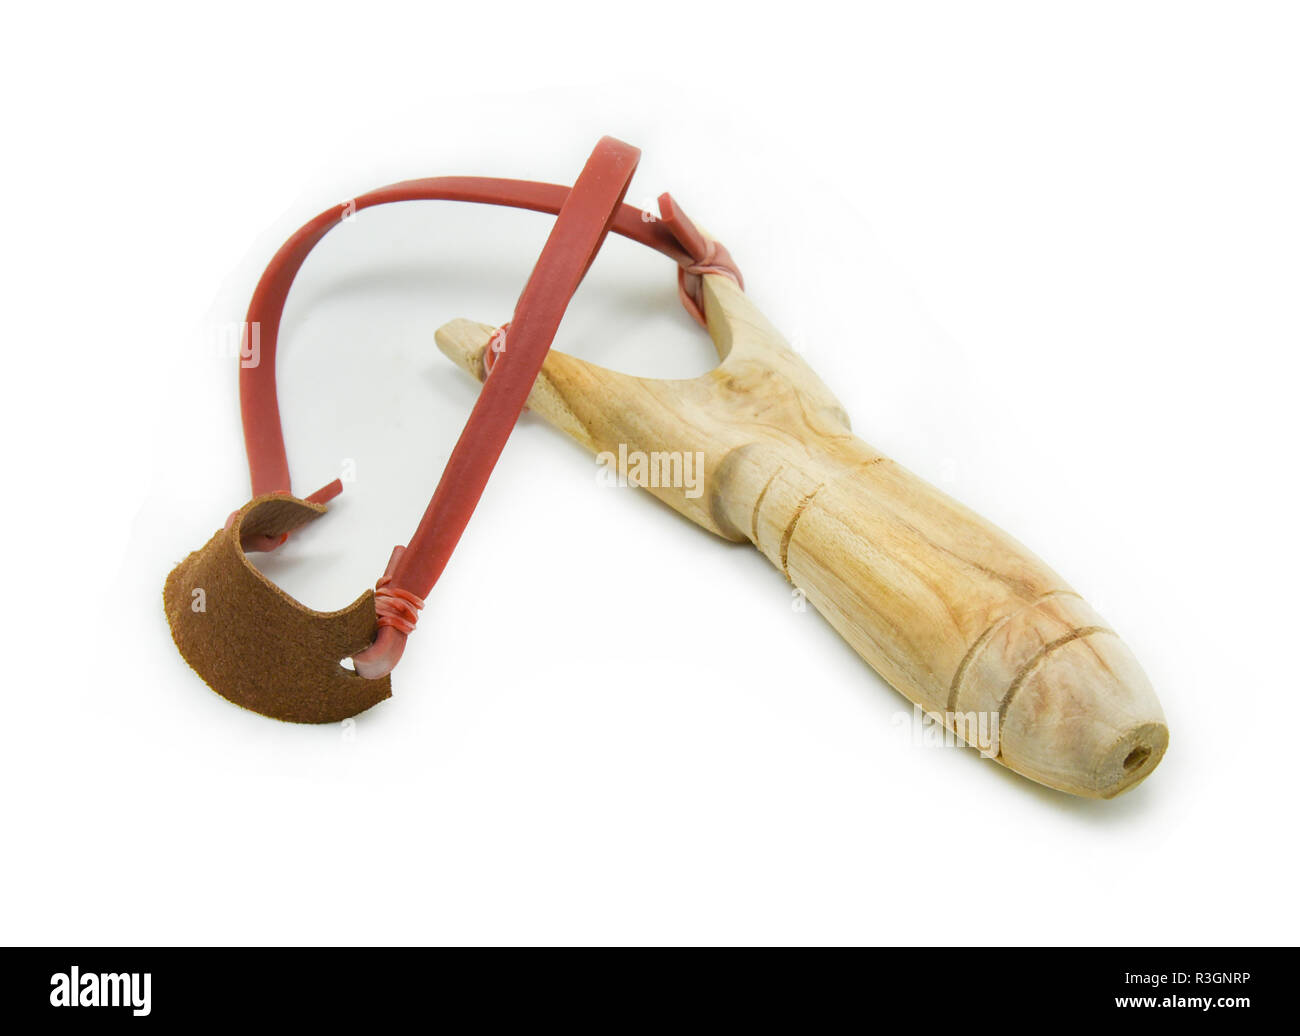 wood catapult (slingshot) on white background Stock Photo